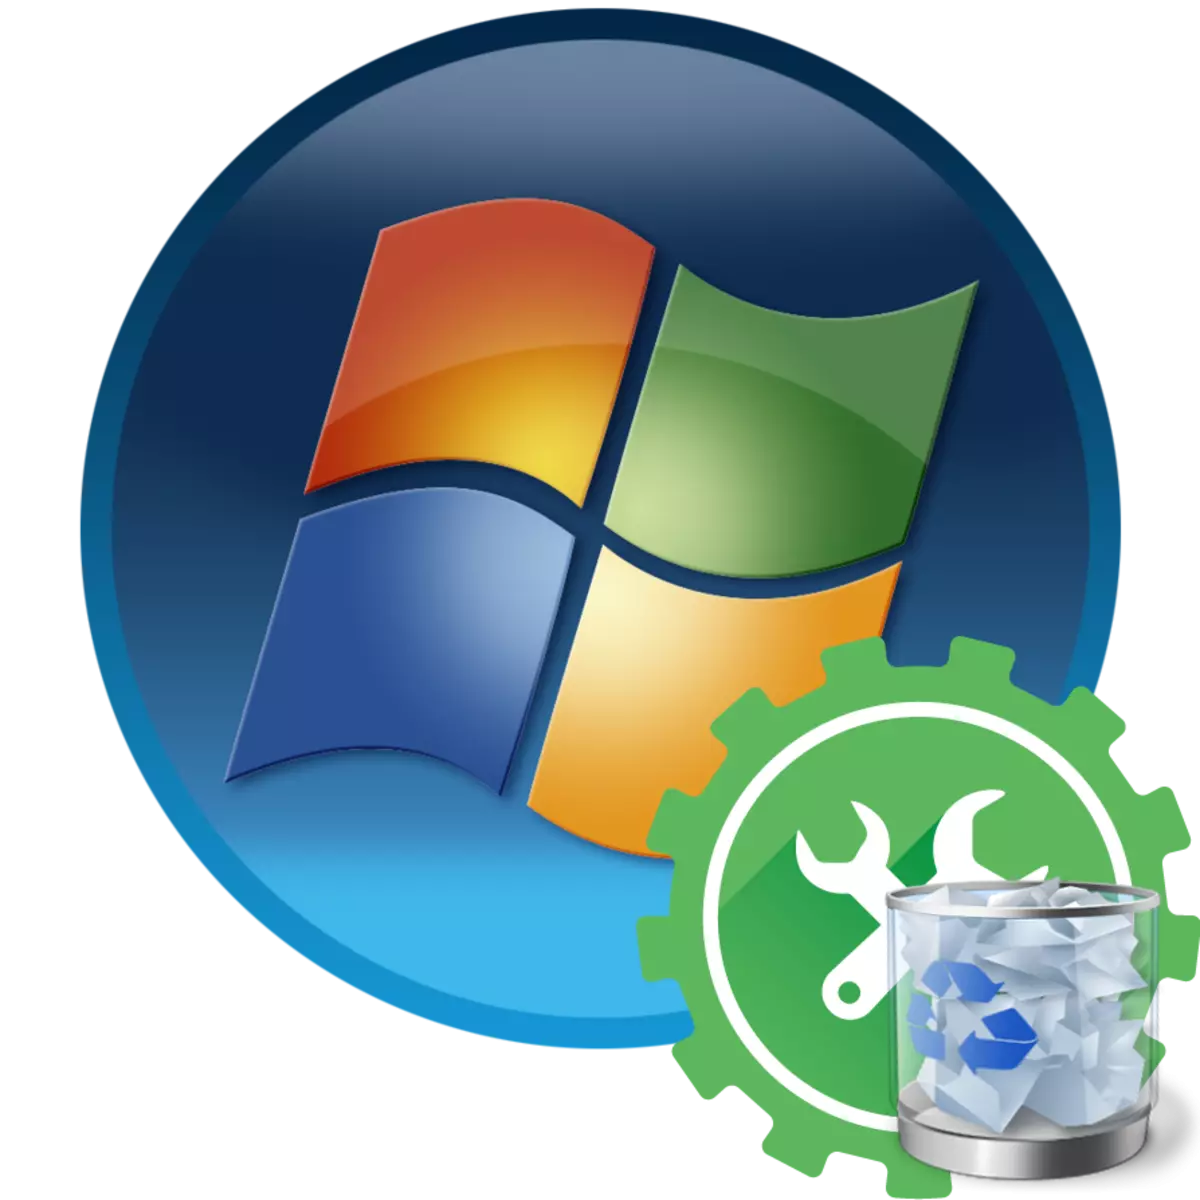 በ Windows 7 ውስጥ የክወና ስርዓት ውስጥ አገልግሎት መሰረዝ